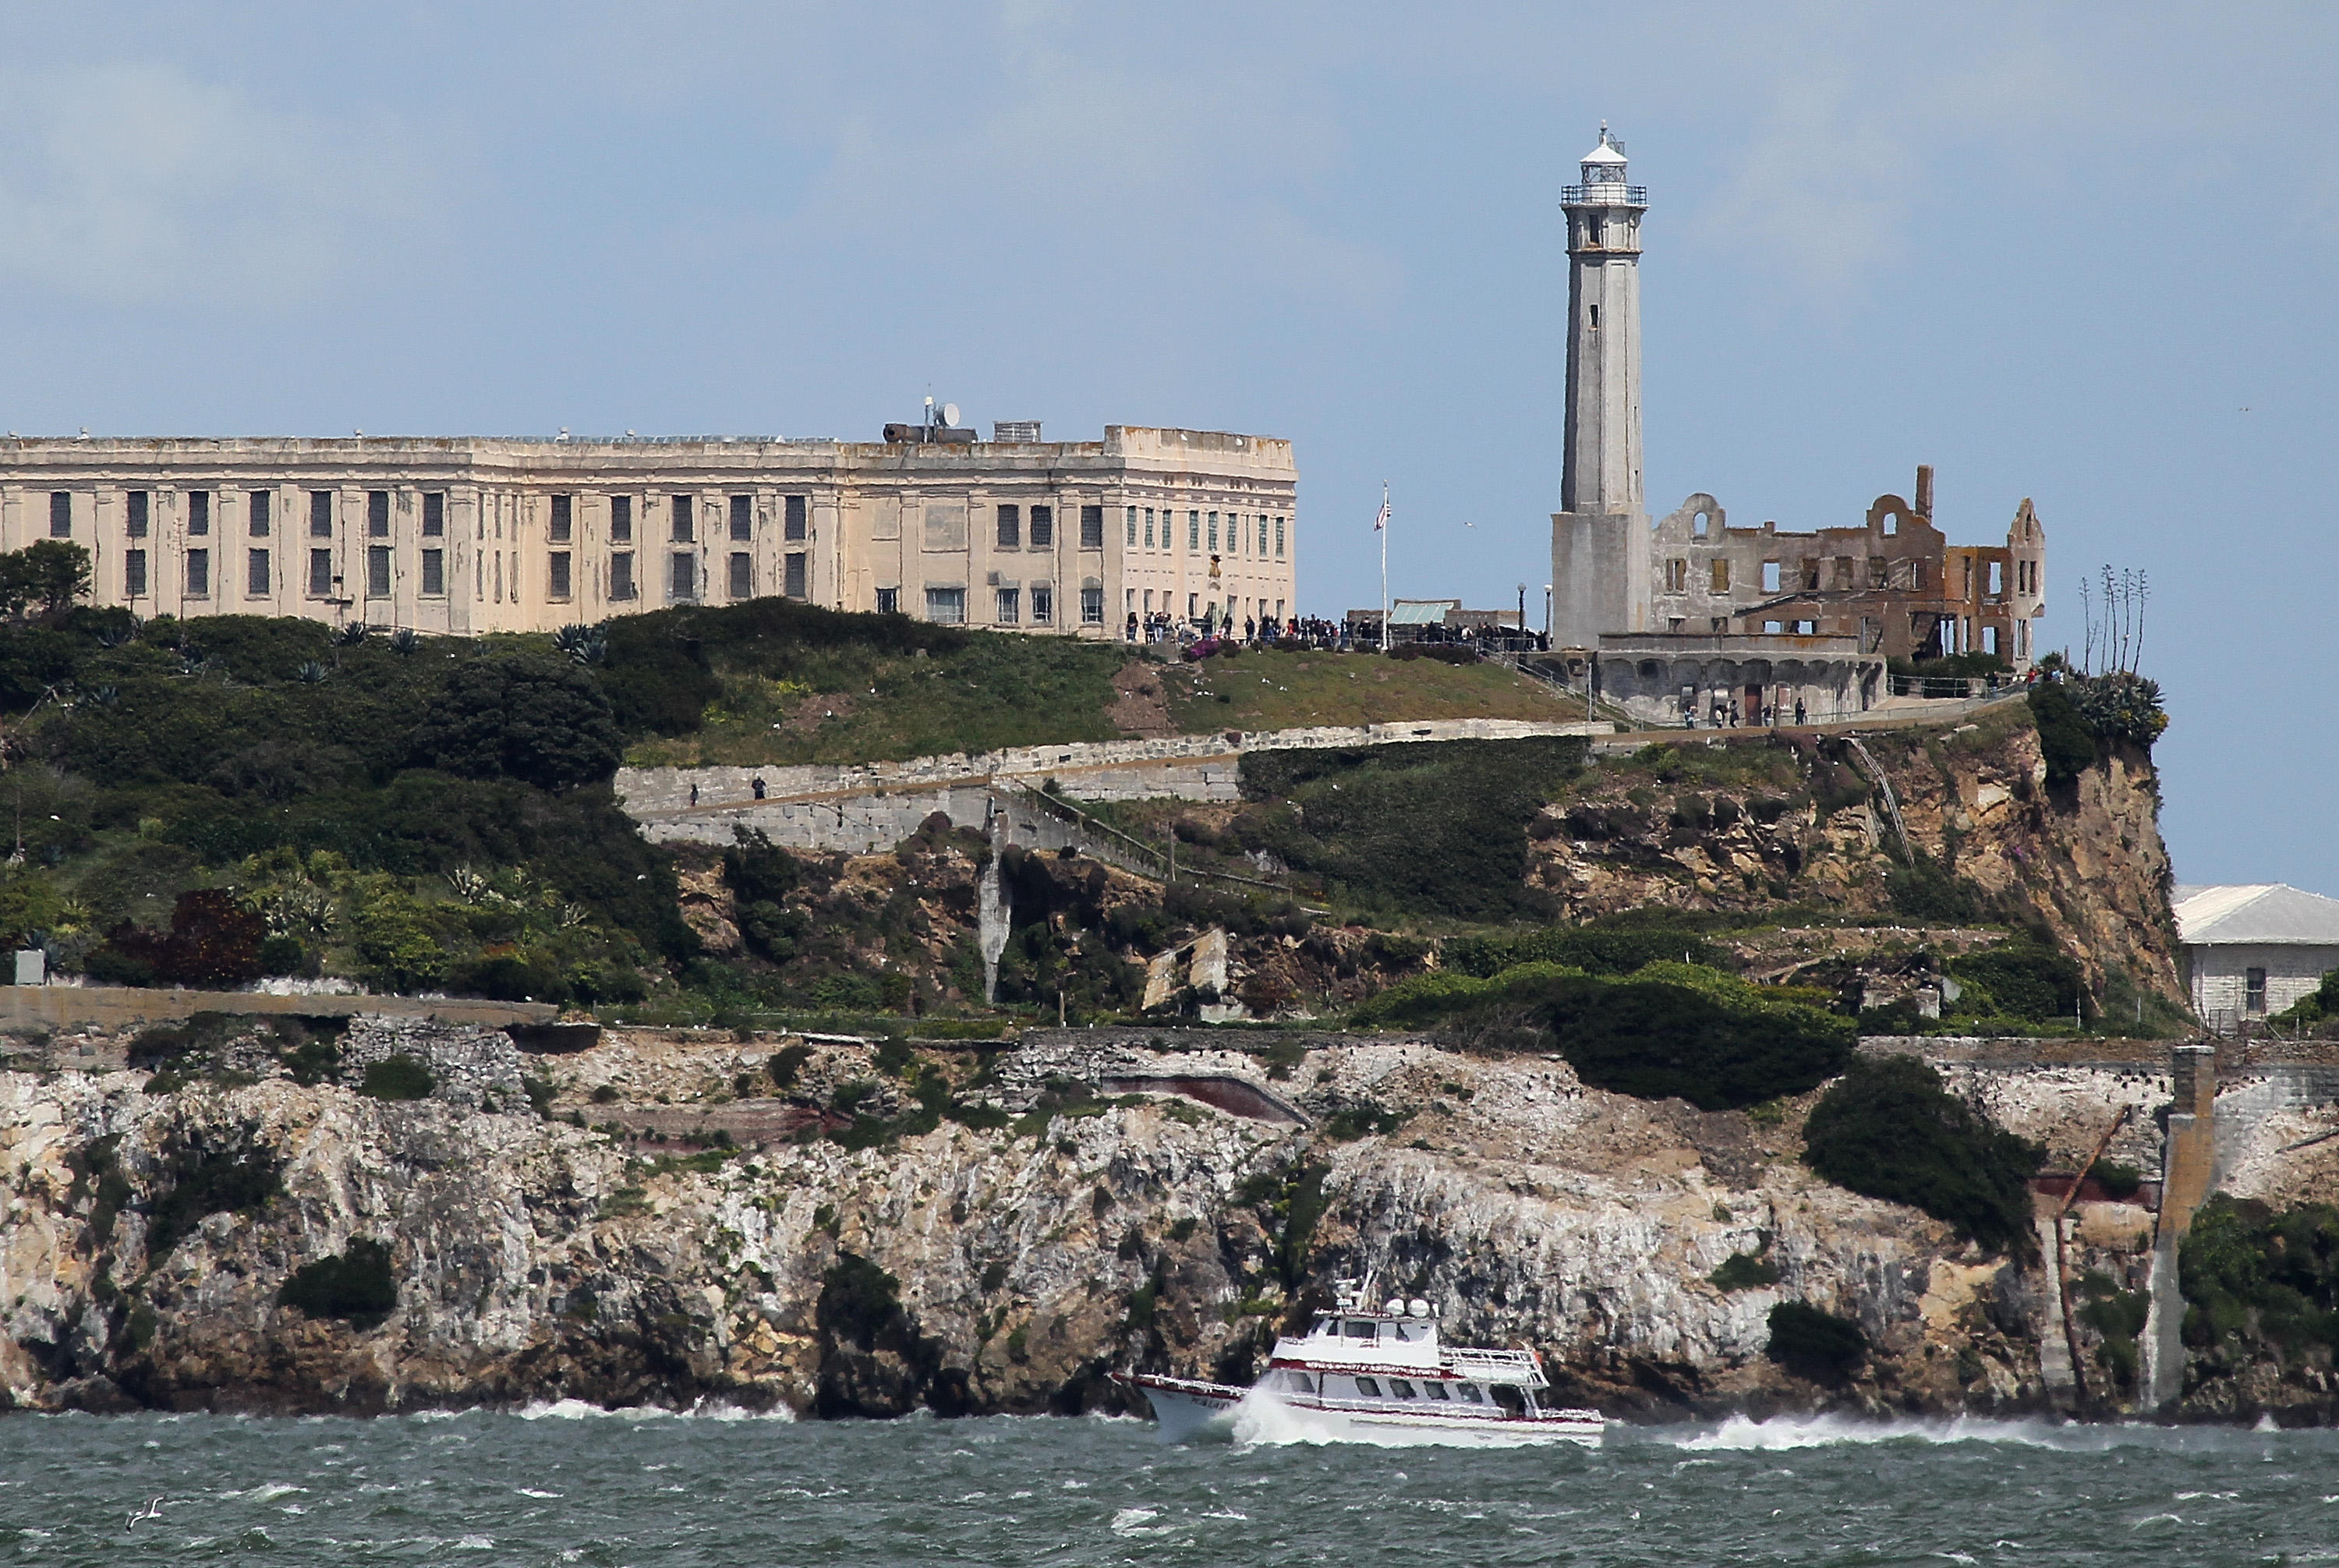 Alcatraz: The most famous prison break in history